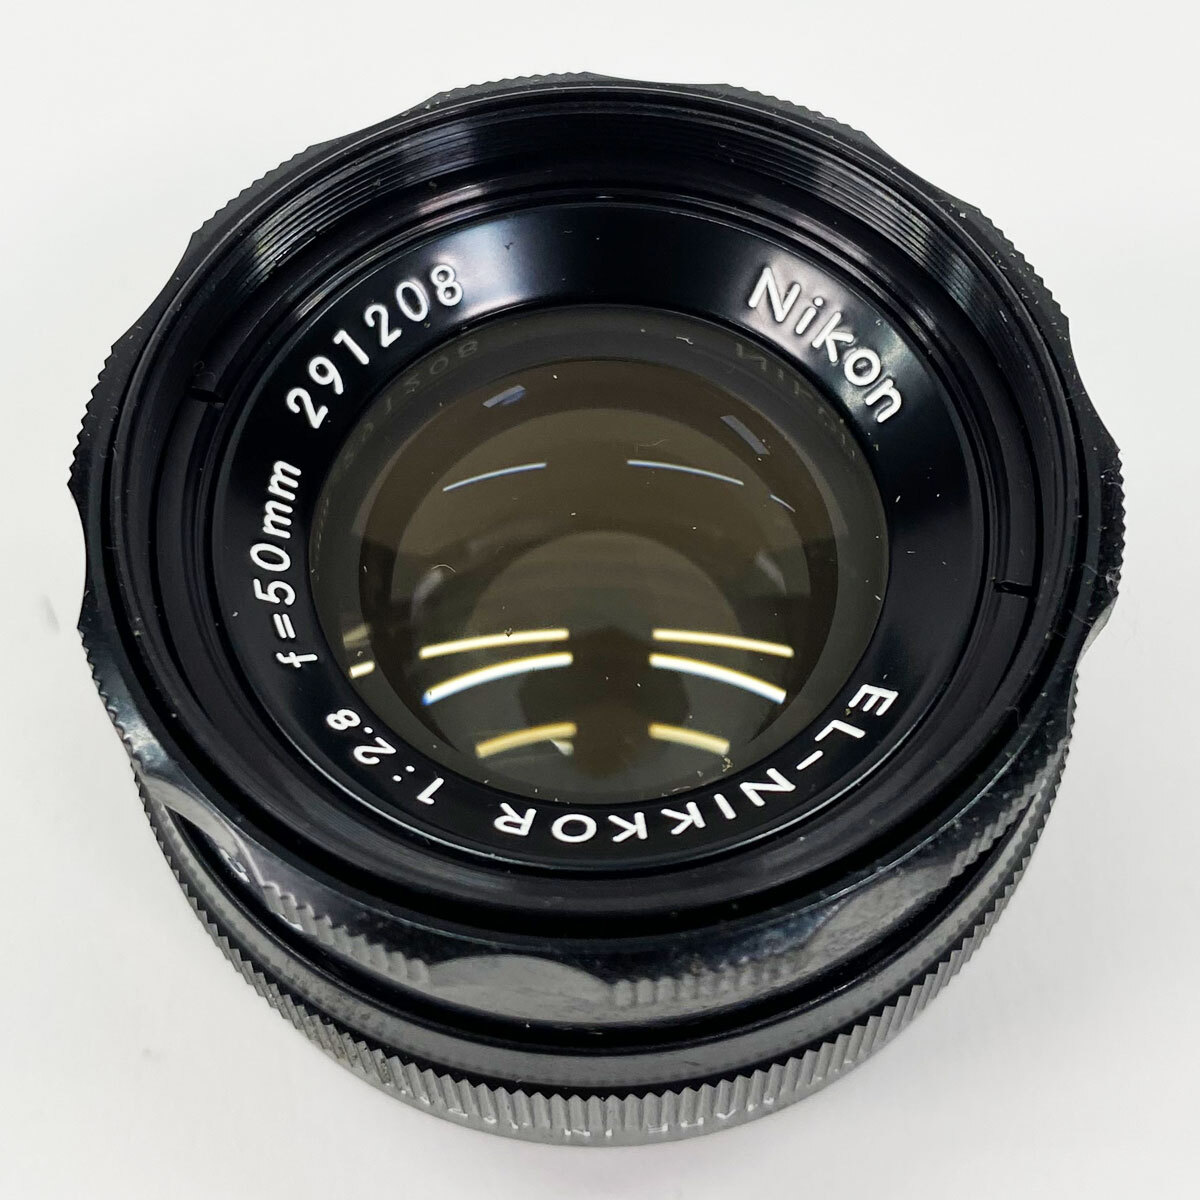 ニコン Nikon EL-NIKKOR 50mm f/2.8 引き伸ばしレンズ レンズ 保護ケース入り 現状品 中古品 nn0101 088_画像4